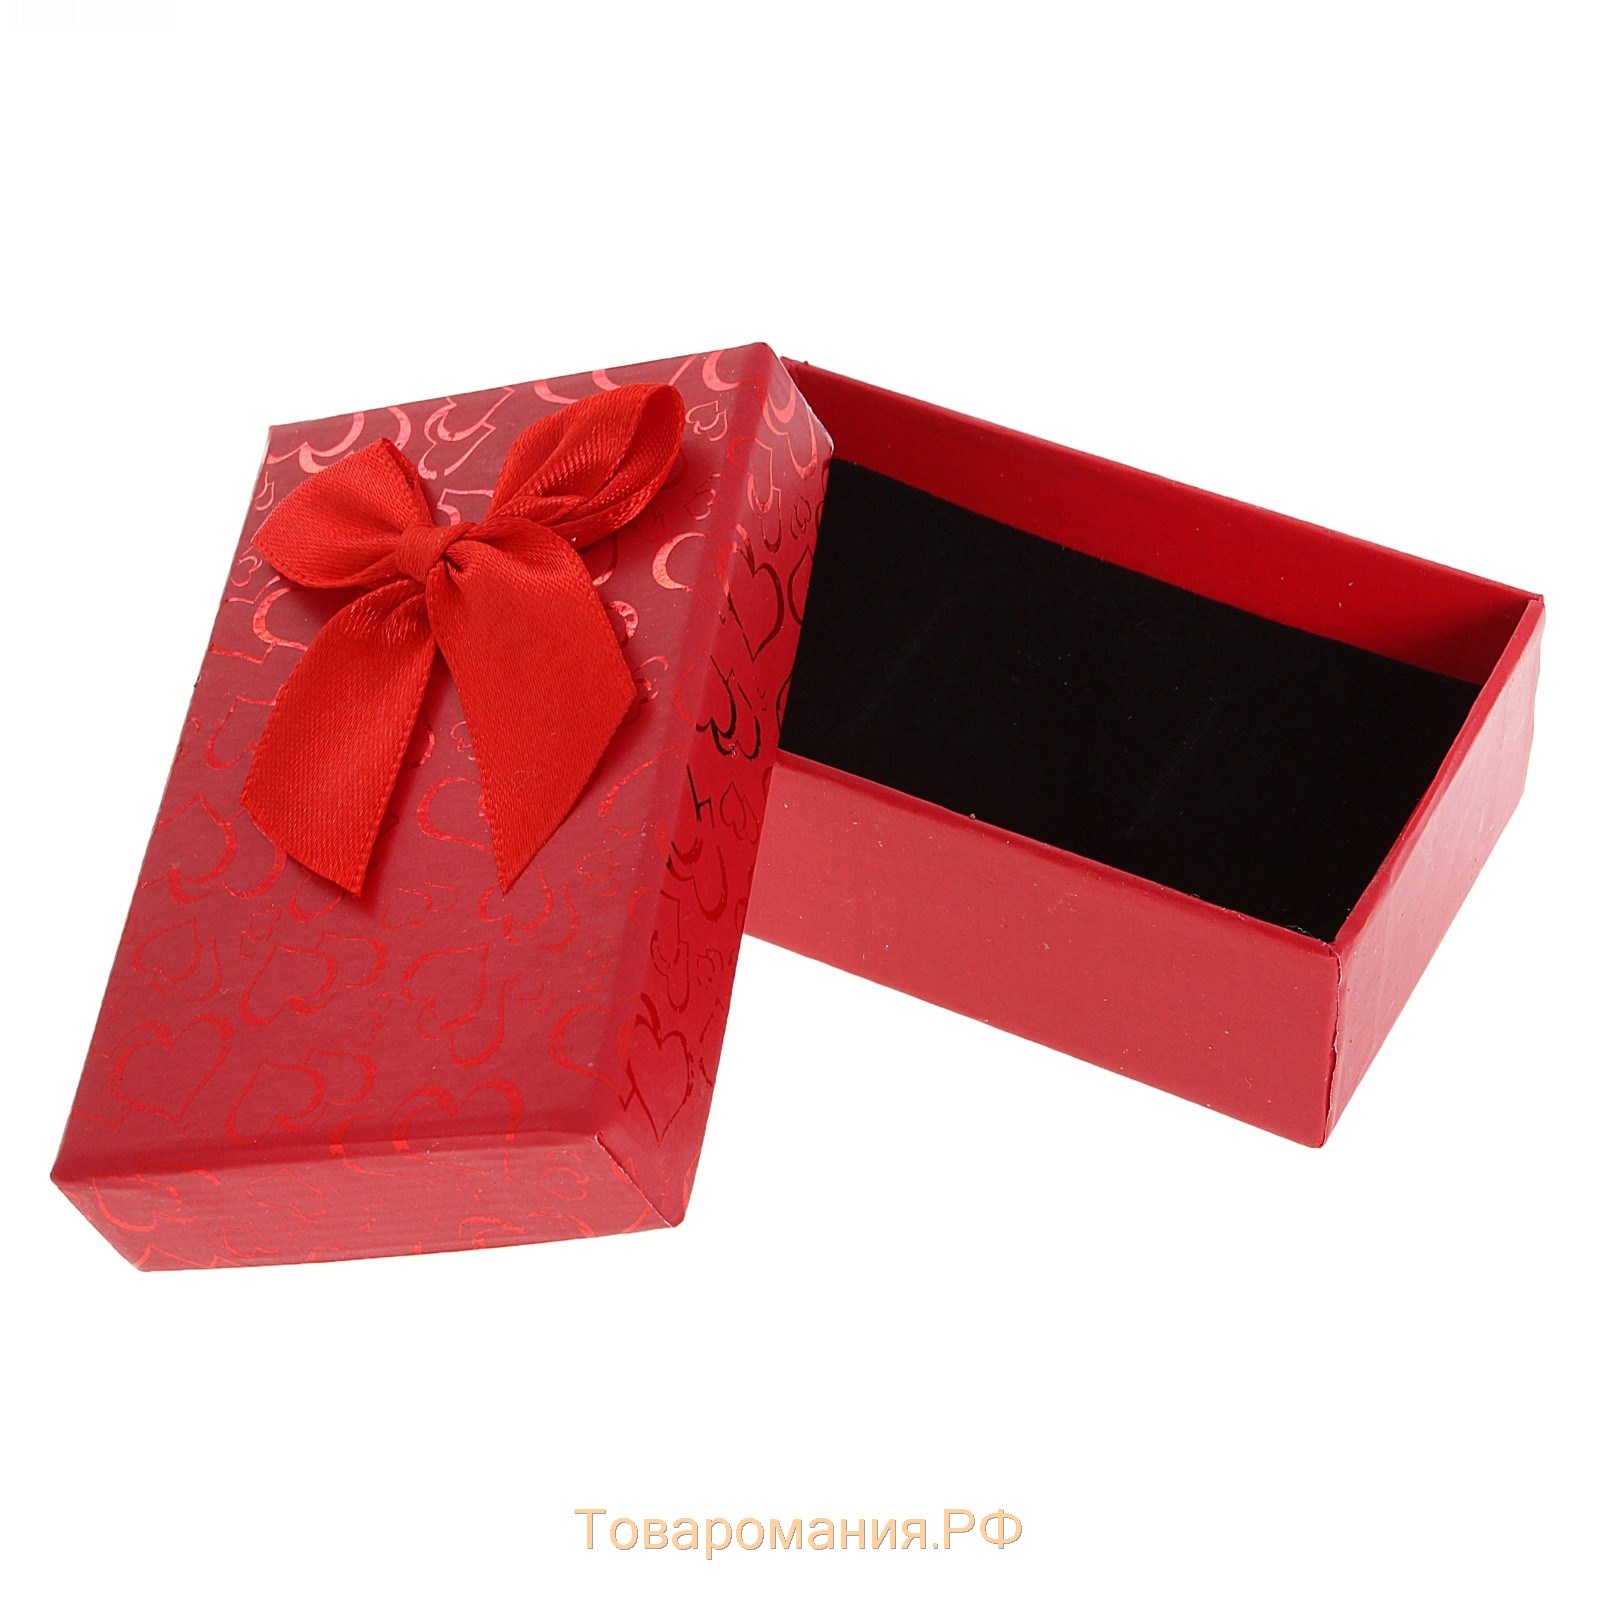 Коробочка подарочная под серьги/кулон/кольцо "Блестящие сердца", 8*5 (размер полезной части 7,5х4,5см), цвет красный